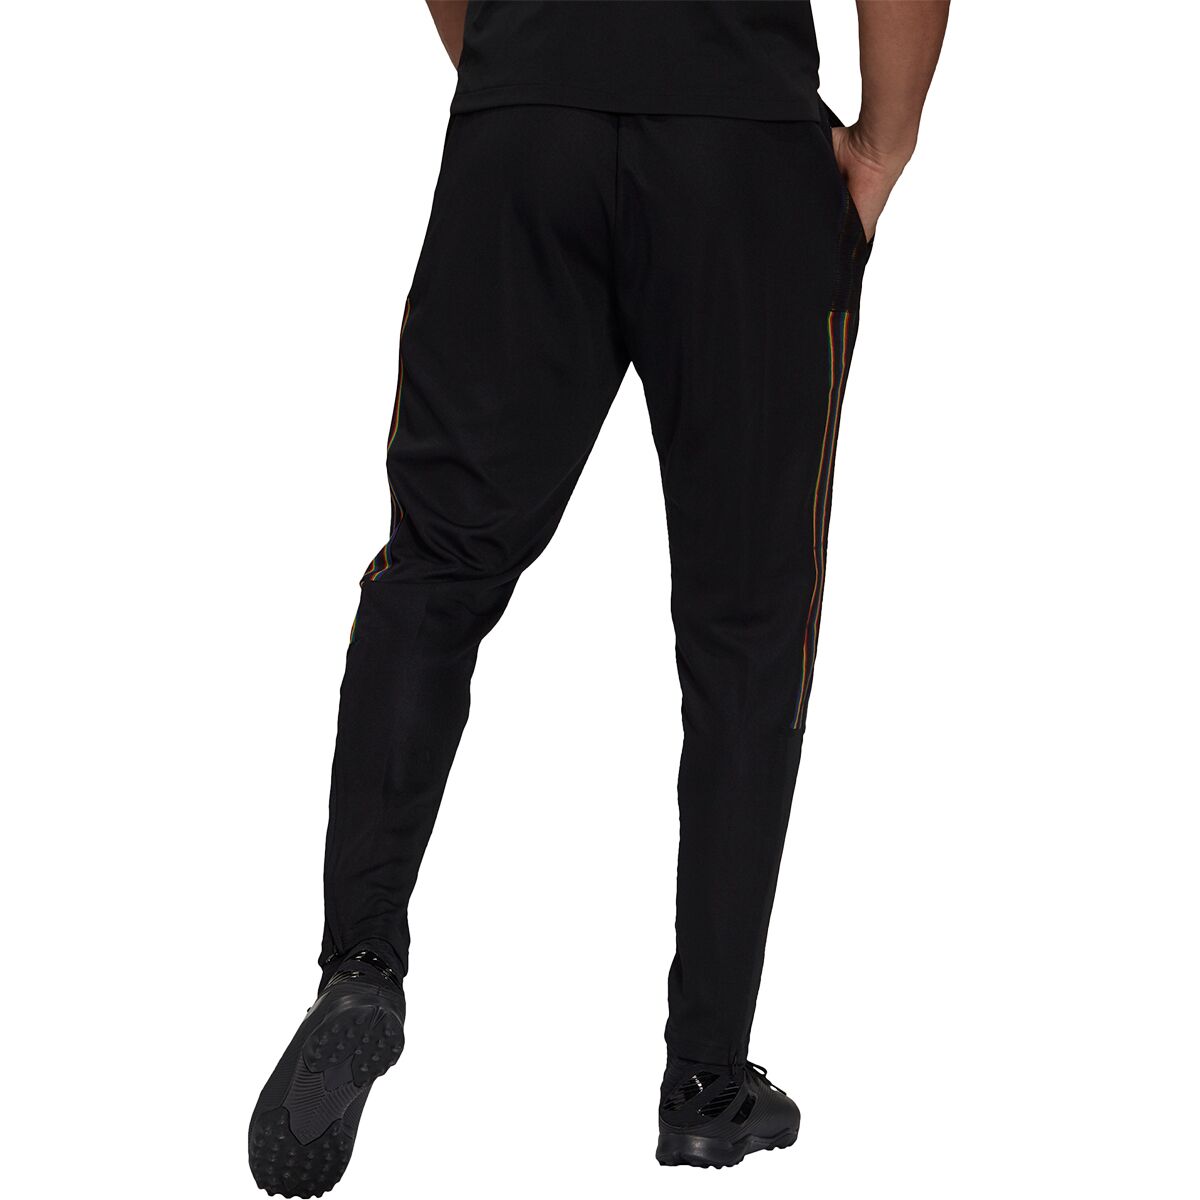 Adidas Tiro Pride Pant - Men's - Clothing